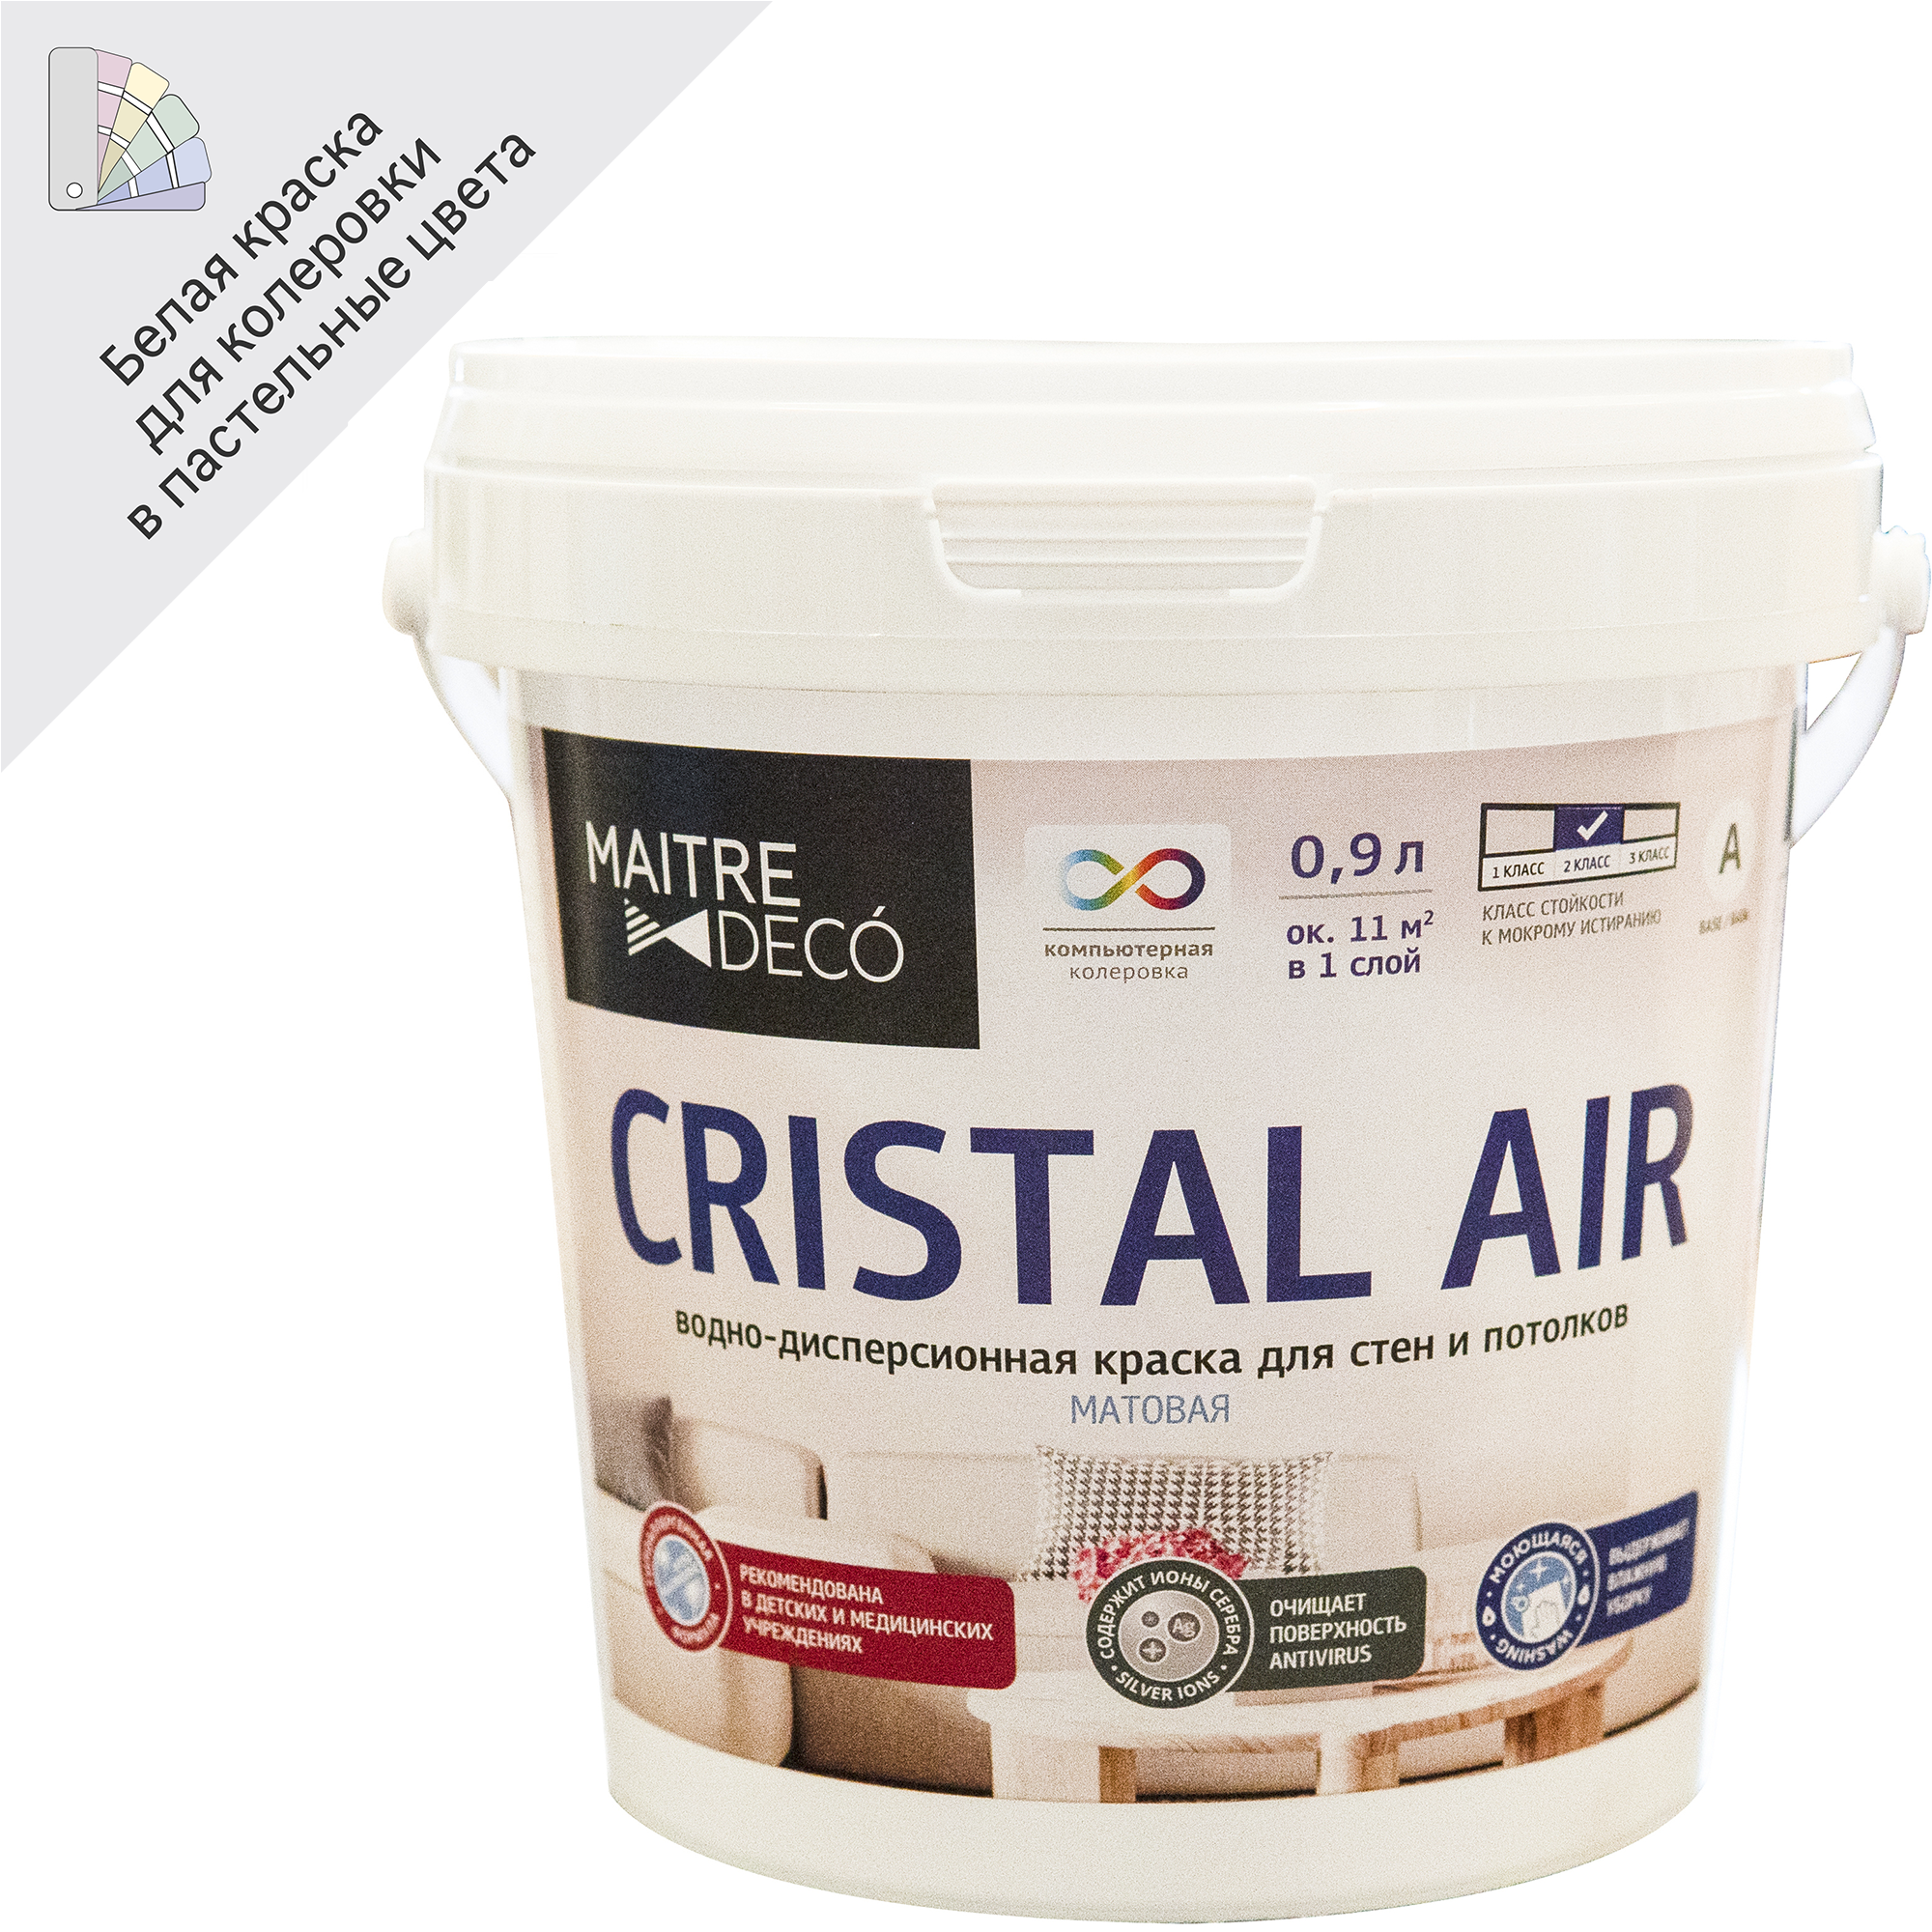 83795324 Краска для стен и потолков «Cristal Air Antivirus» 0.9 л цвет матовый белый STLM-0044561 MAITRE DECO